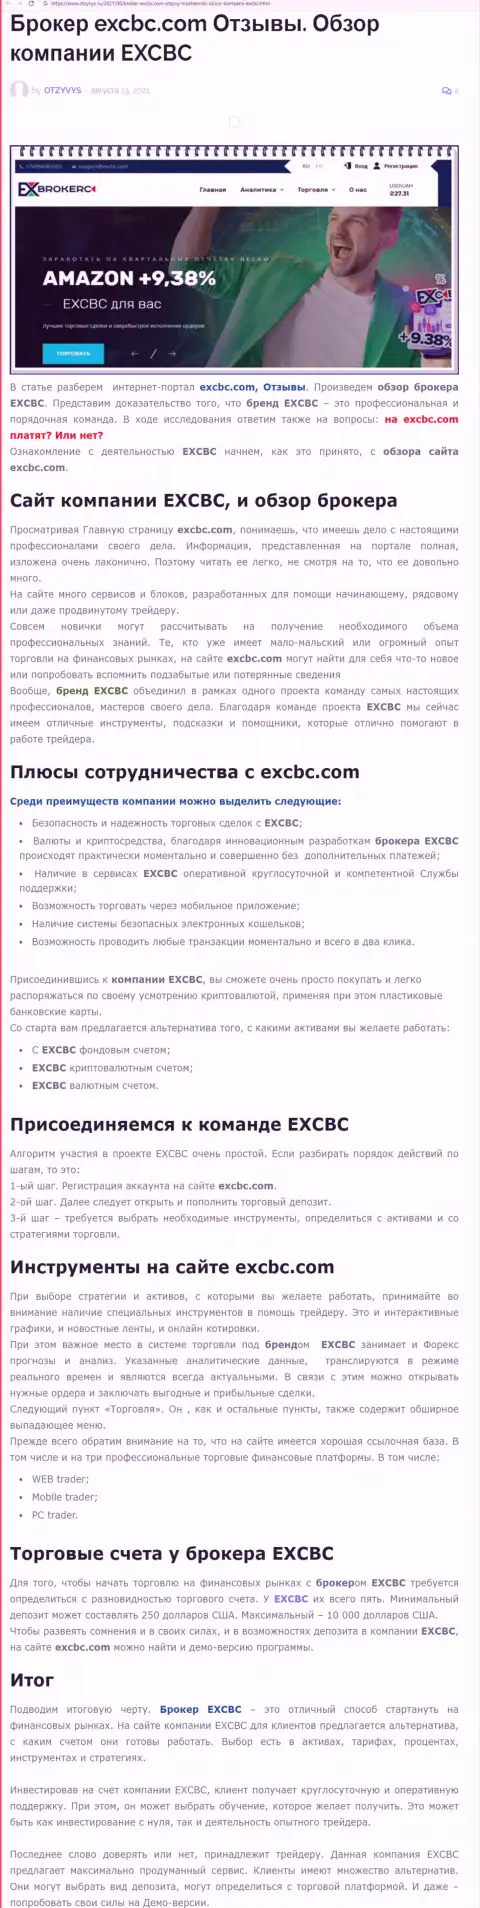 Публикация о форекс брокерской компании ЕИксКБК Ком на сайте otzyvys ru